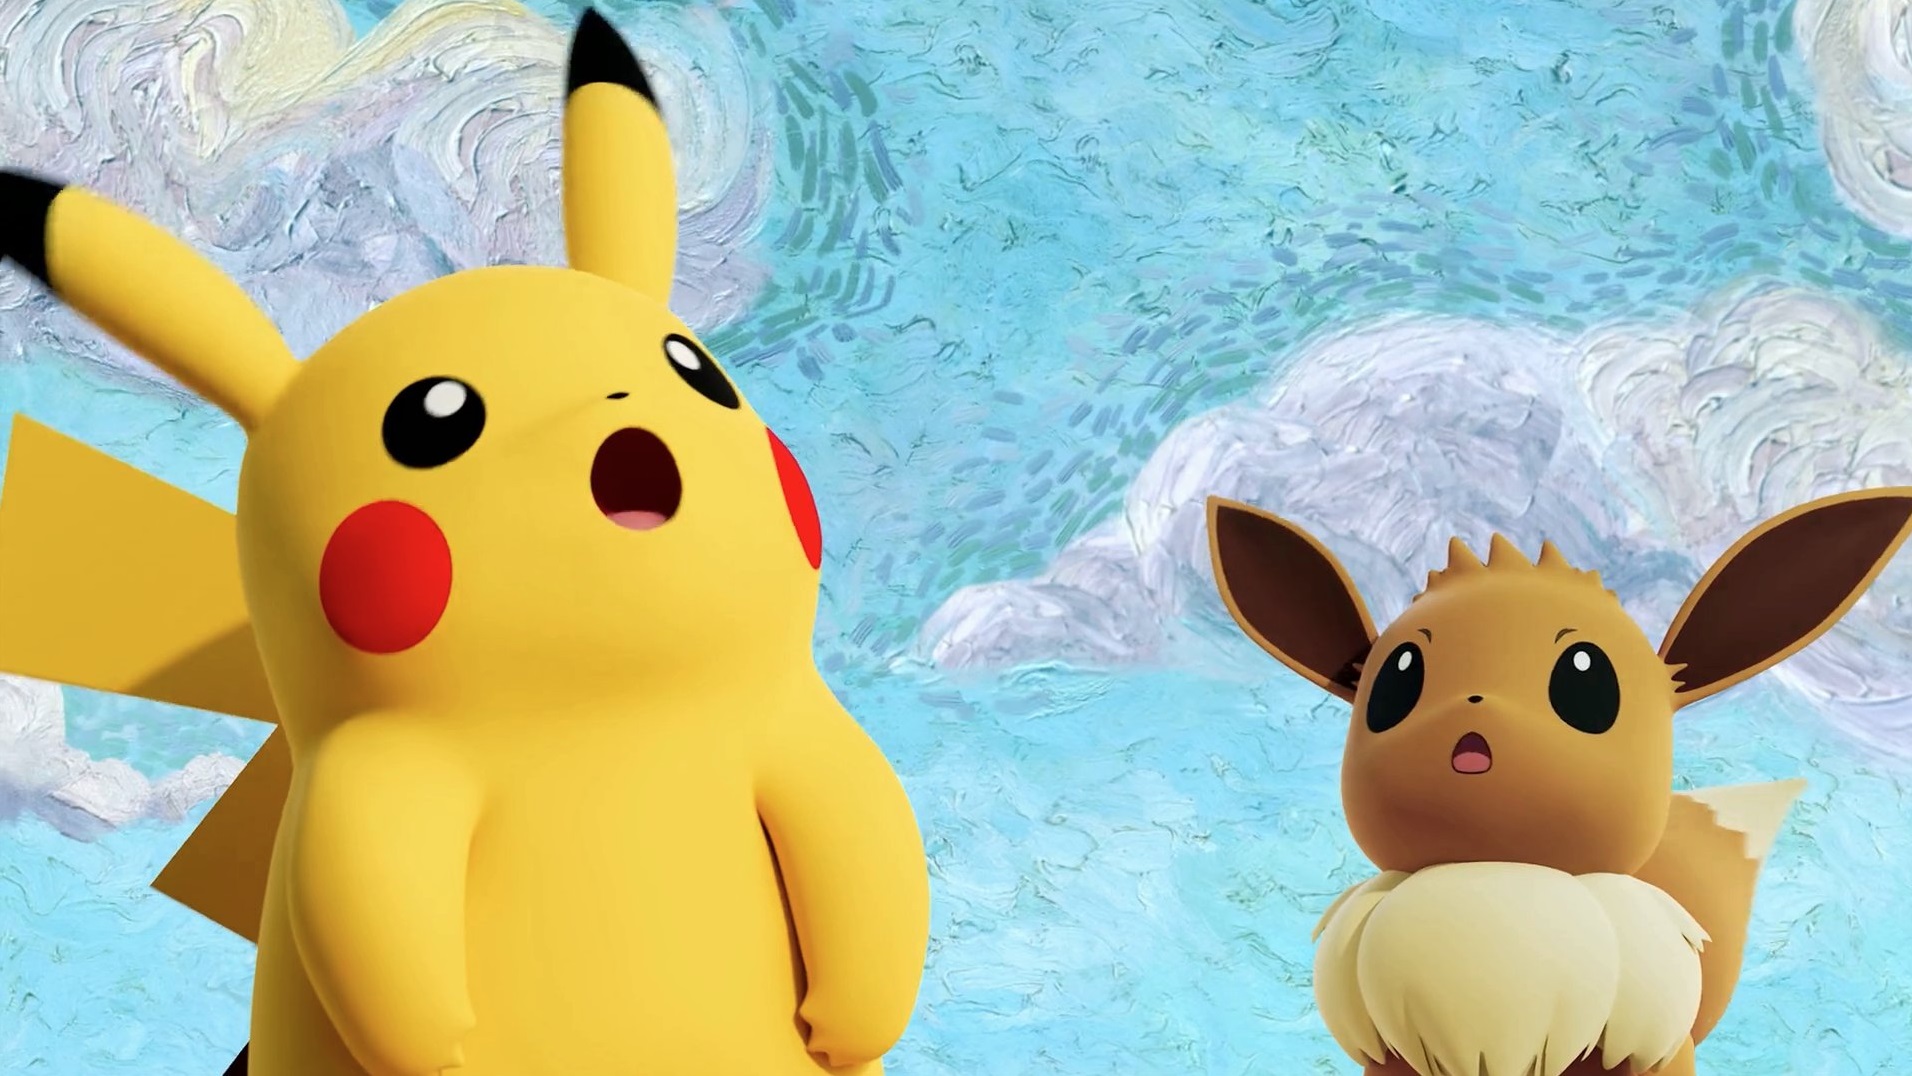 Van Gogh y Pokémon se unen en una surrealista colaboración